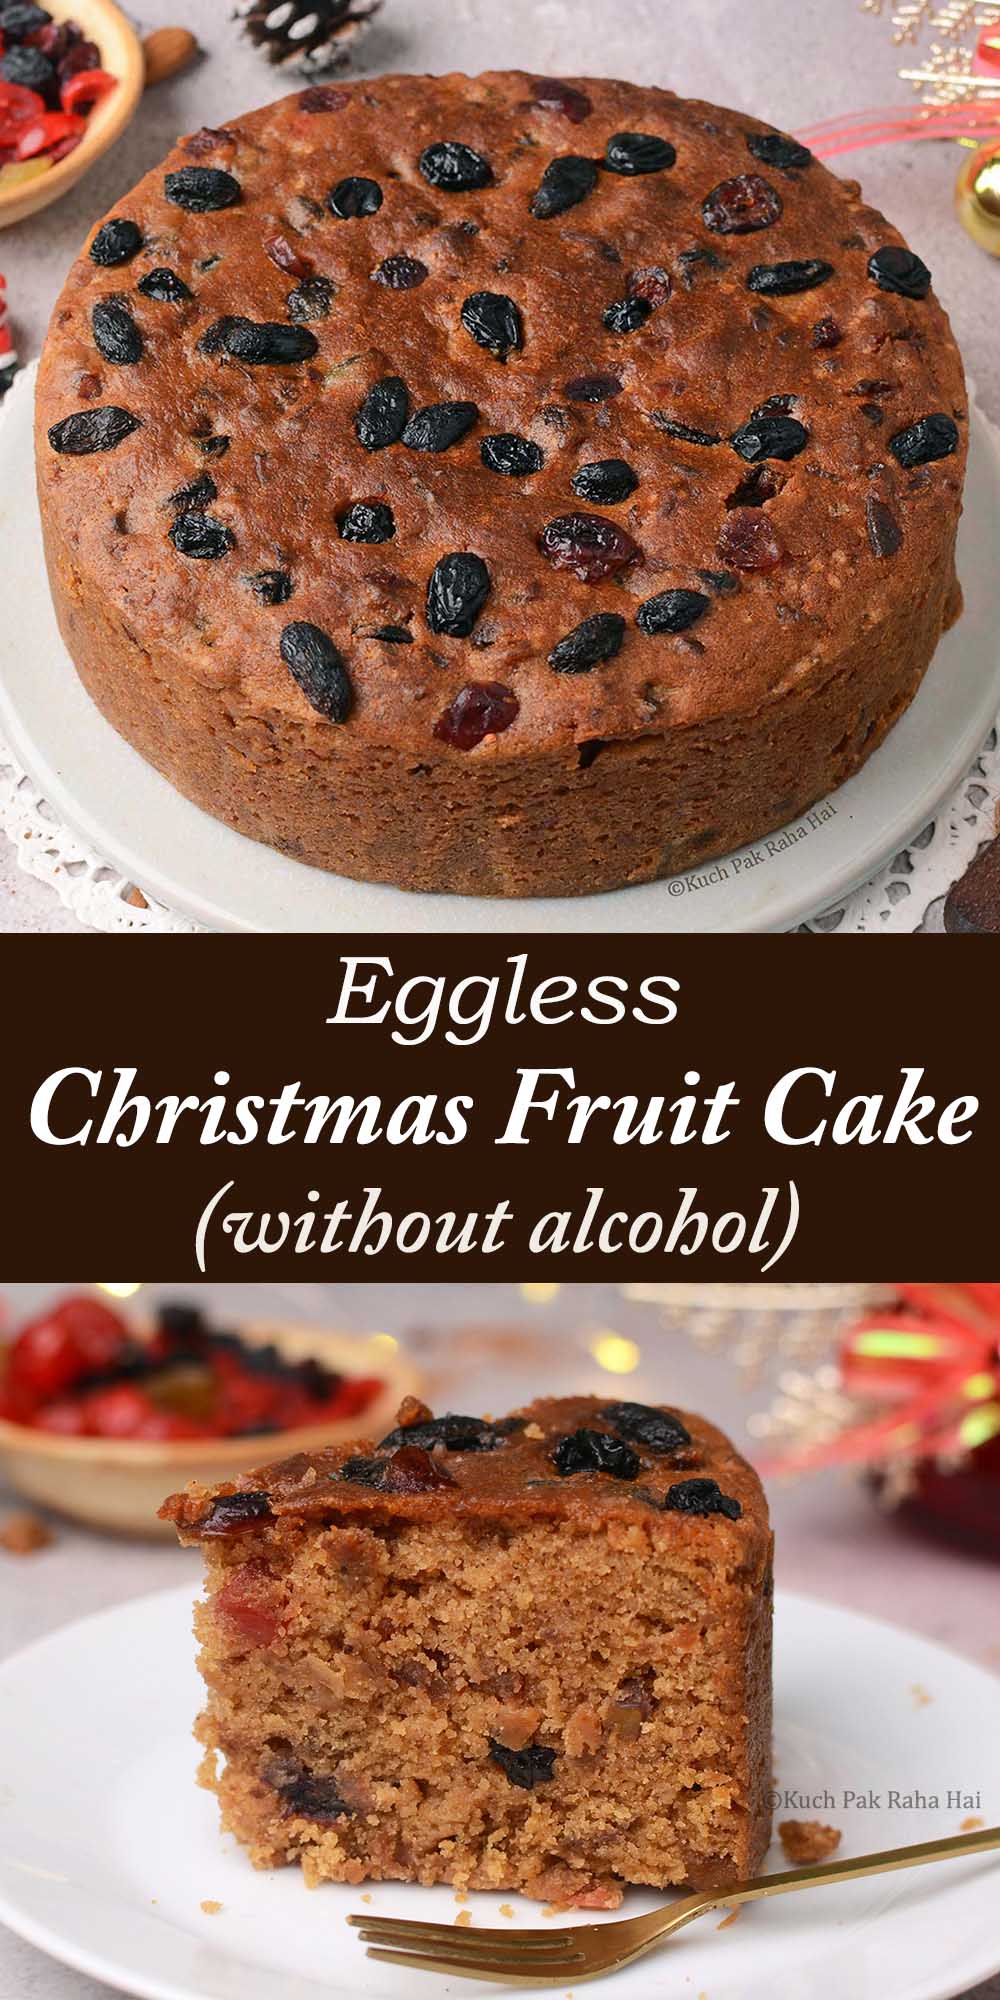 Egg free Christmas Fruit Cake without alcohol.